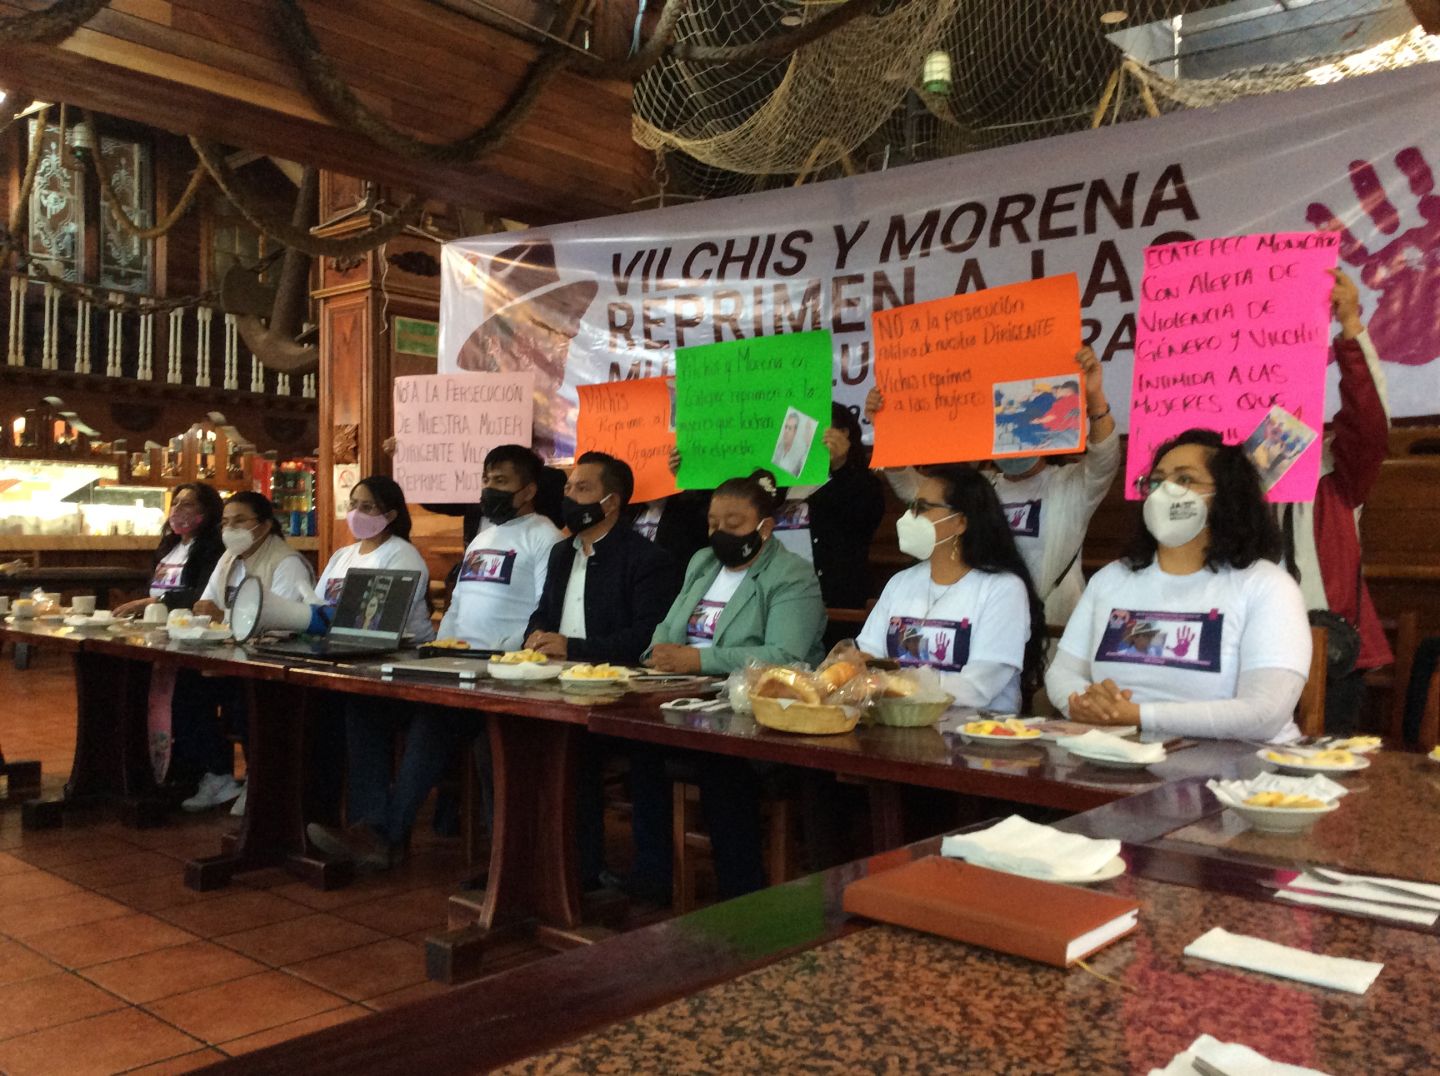 Presidente de Ecatepec Fernando Vilchis resultó un represor 